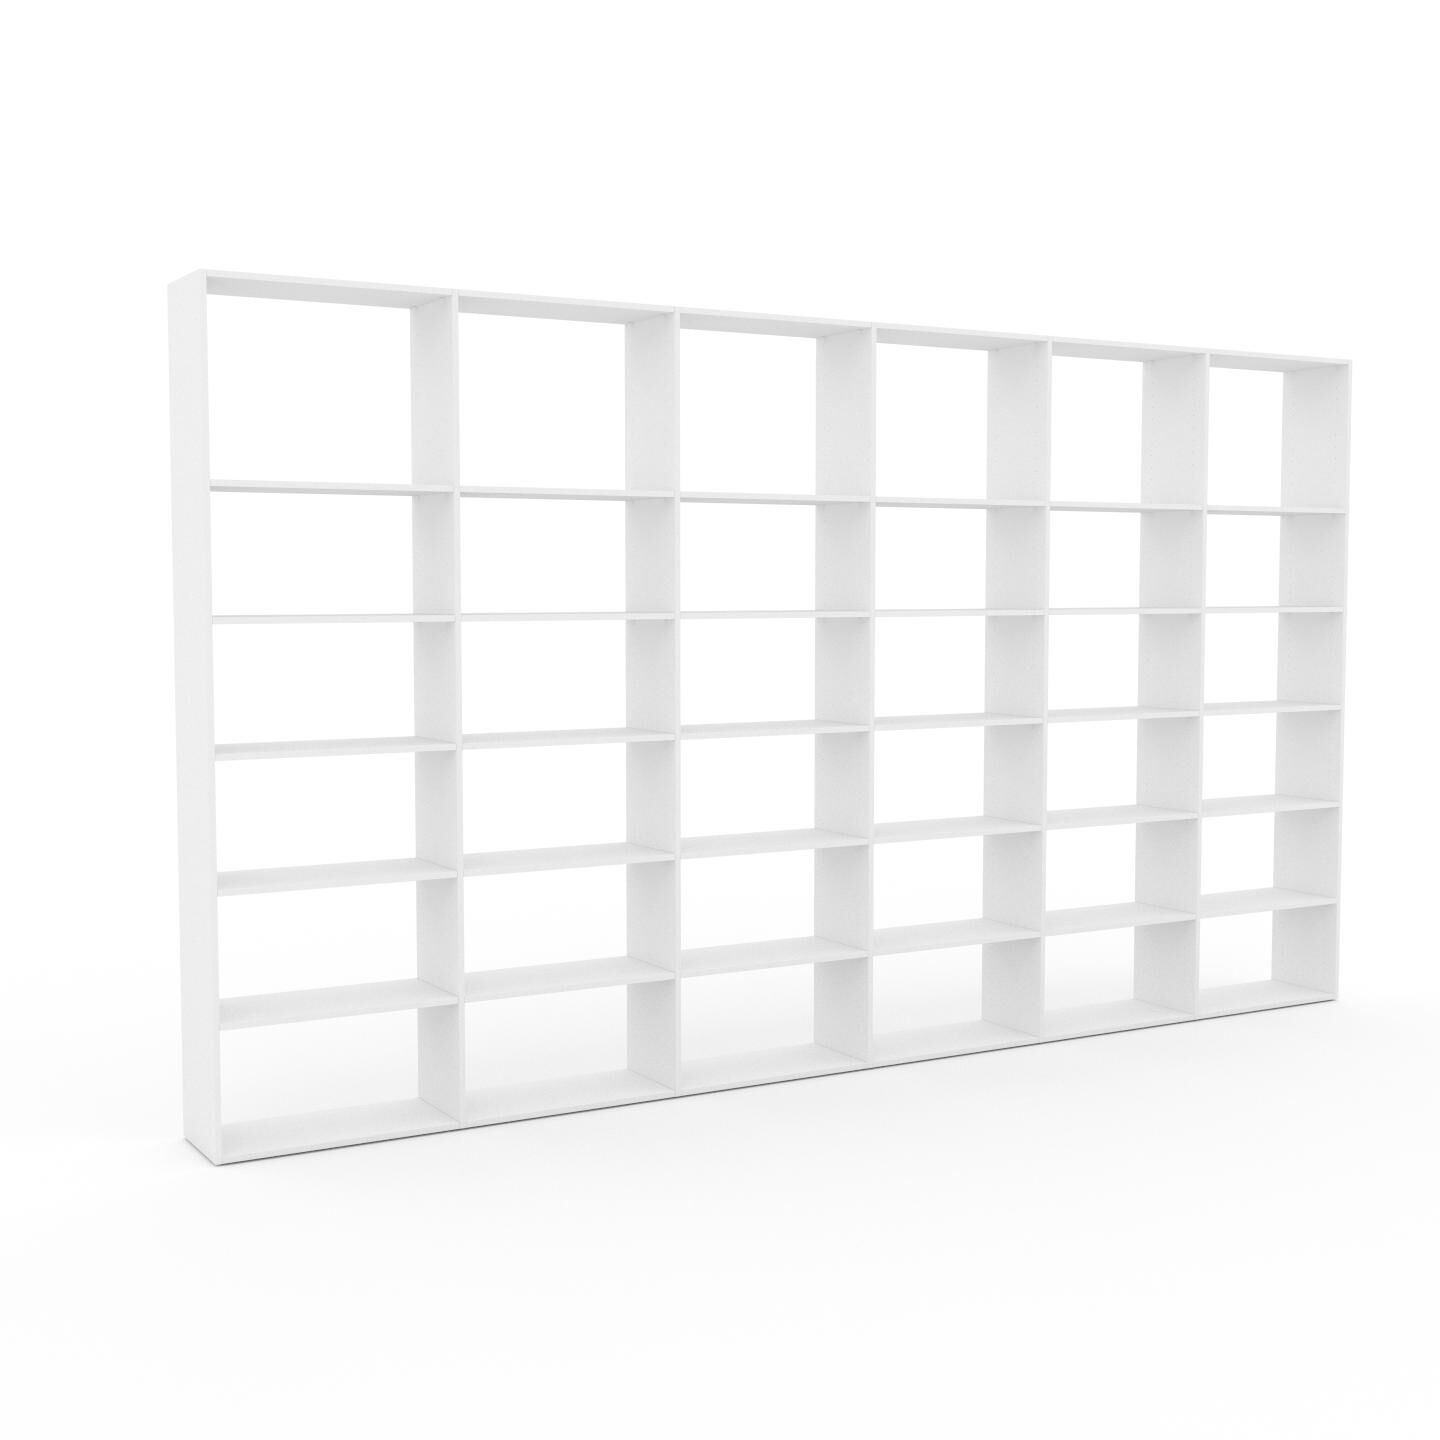 MYCS Bücherregal Weiß - Modernes Regal für Bücher: Hochwertige Qualität, einzigartiges Design - 450 x 253 x 35 cm, Individuell konfigurierbar